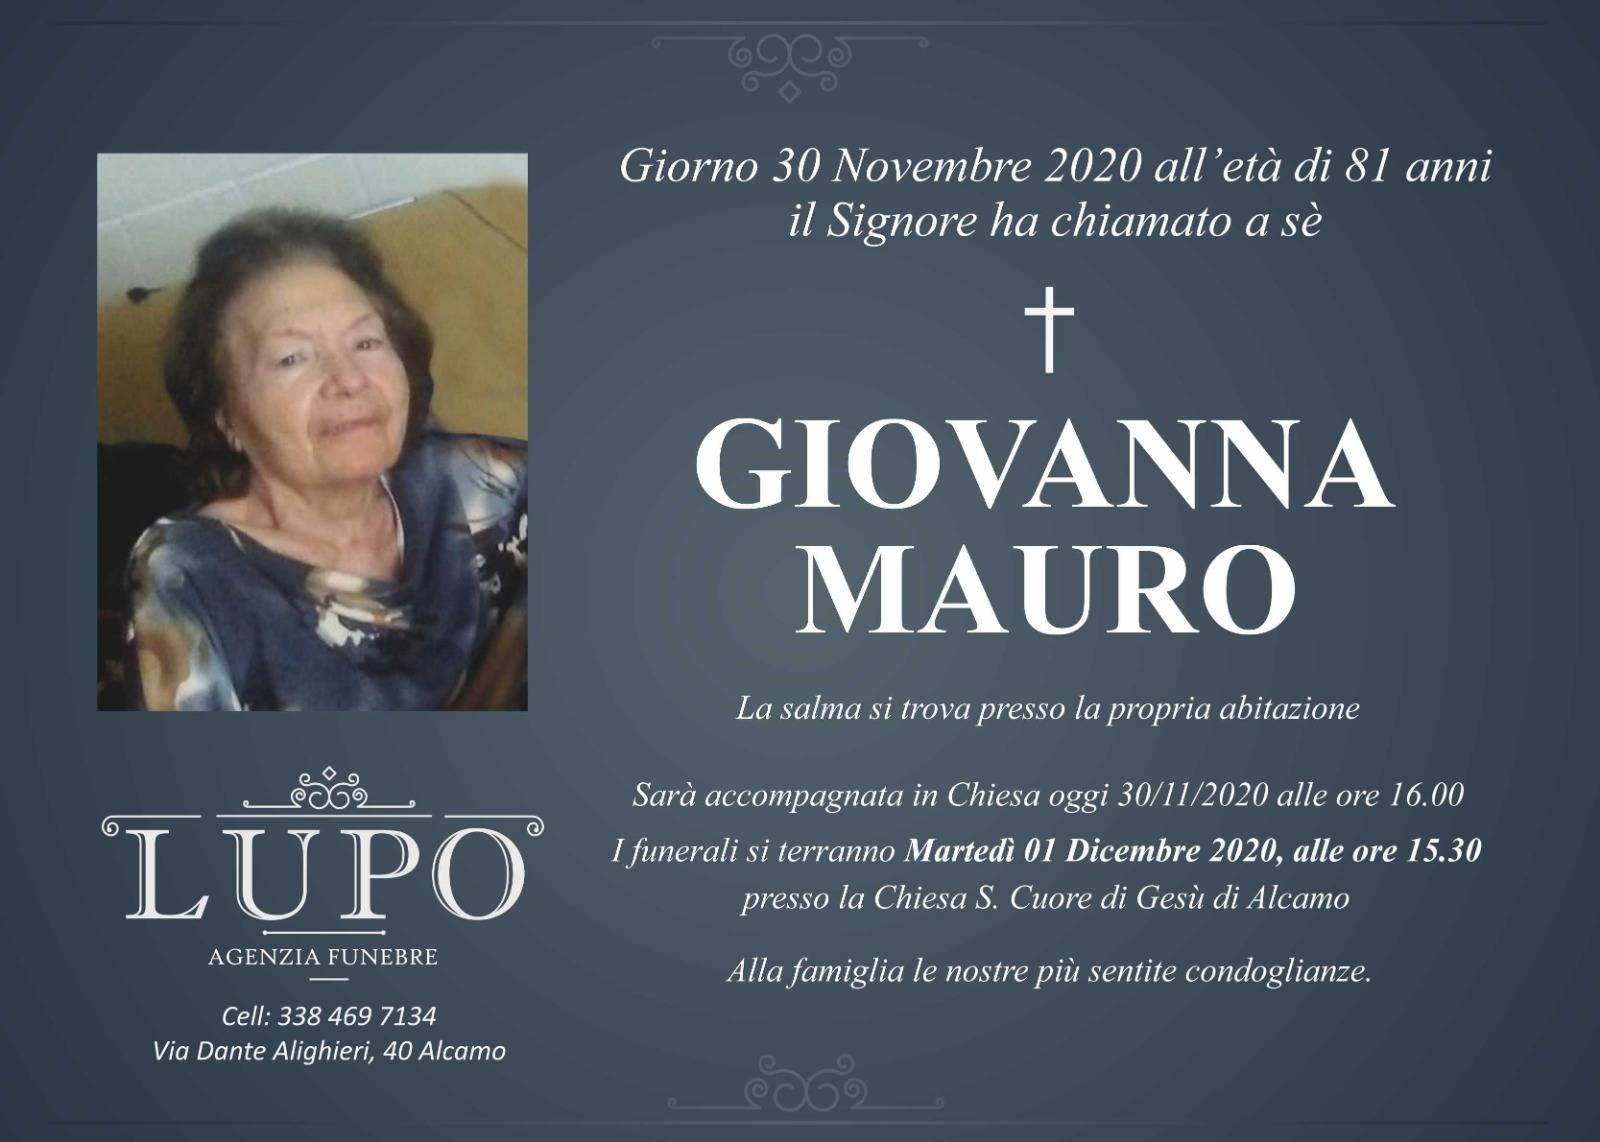 Giovanna Mauro